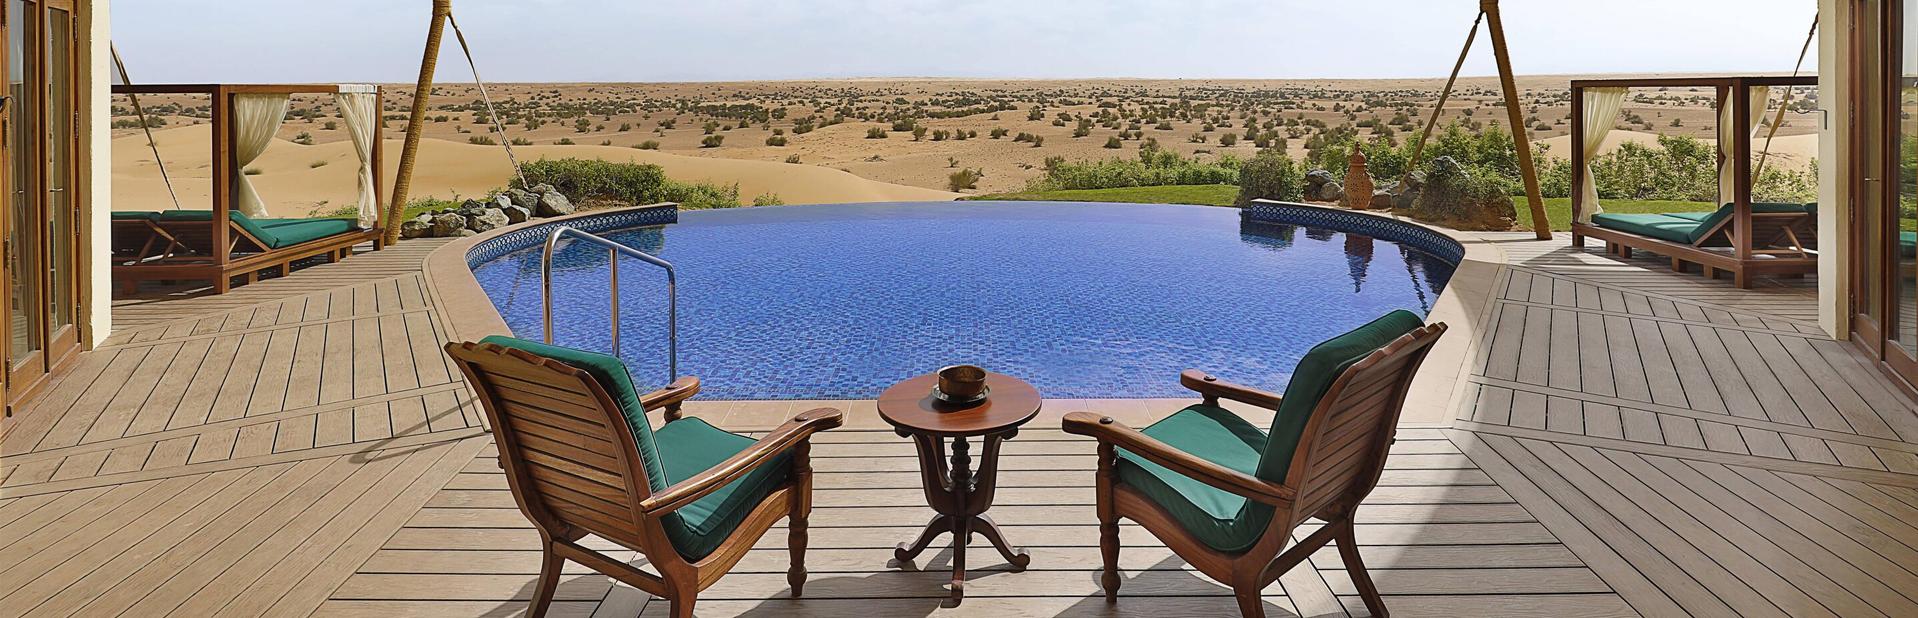 Отель Al Maha Desert Resort & Spa в Дубай, ОАЭ